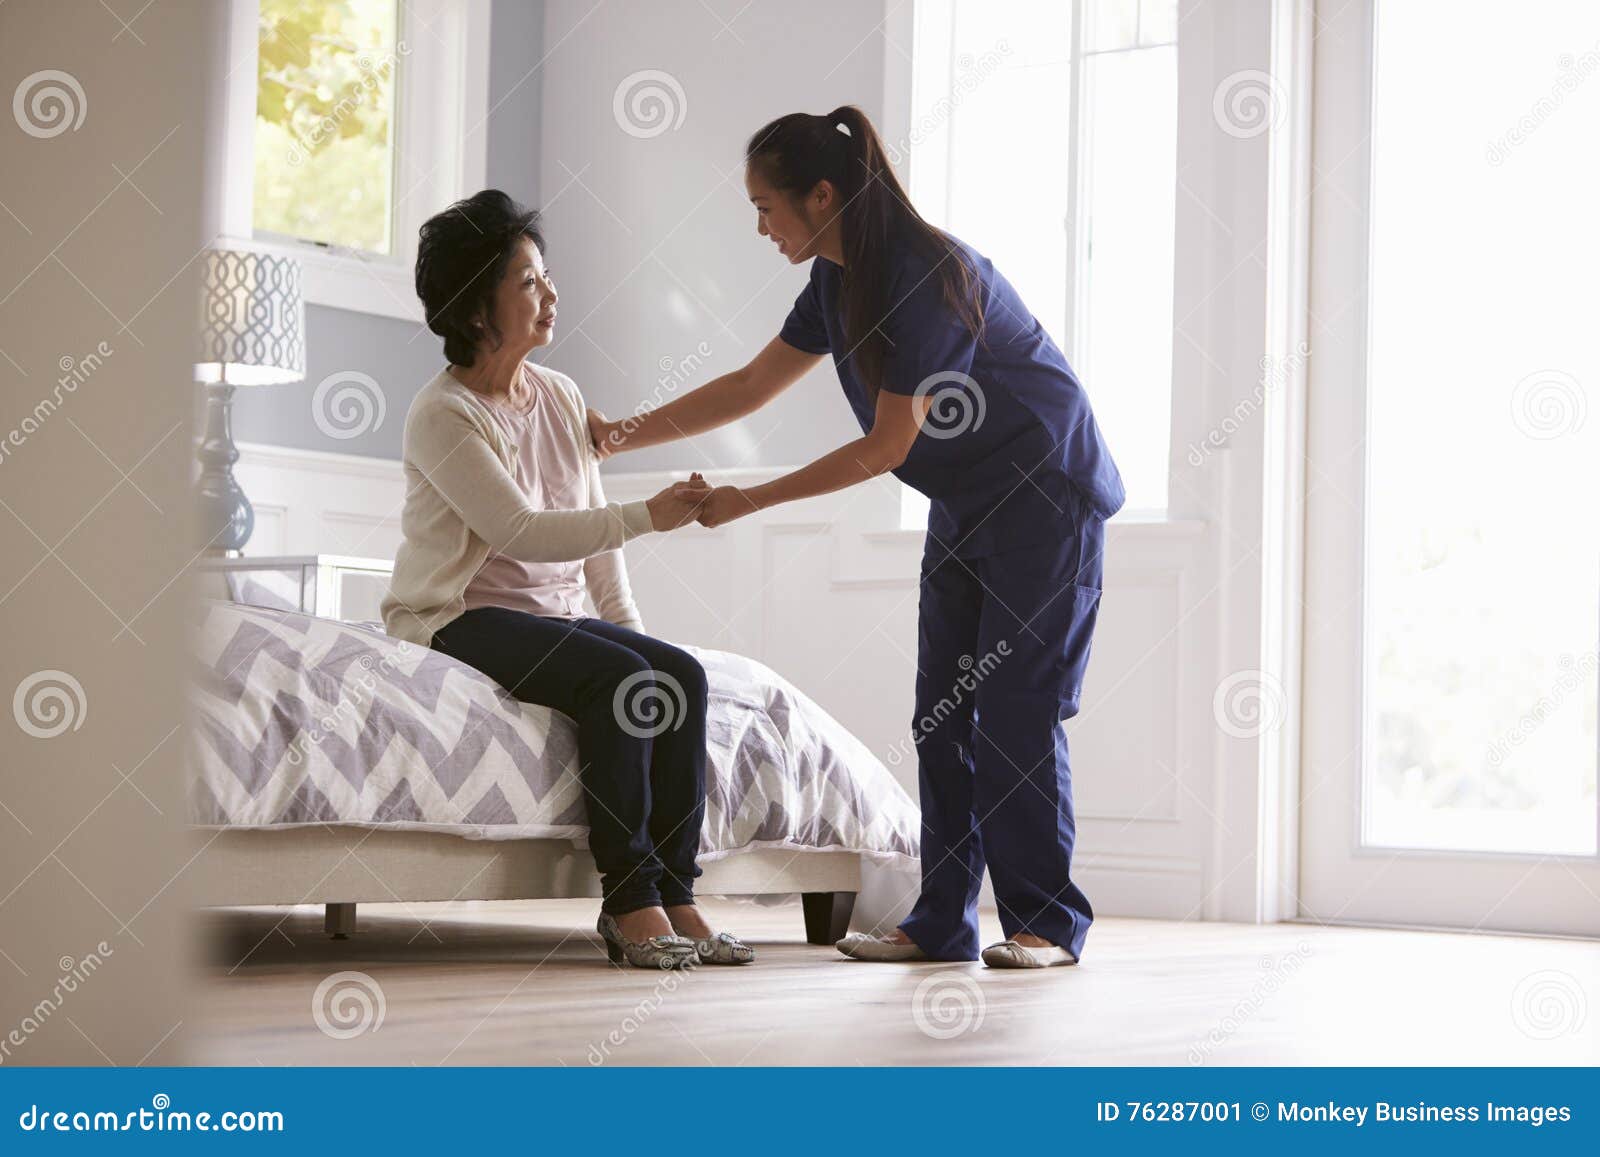 nurse making home visit to senior woman